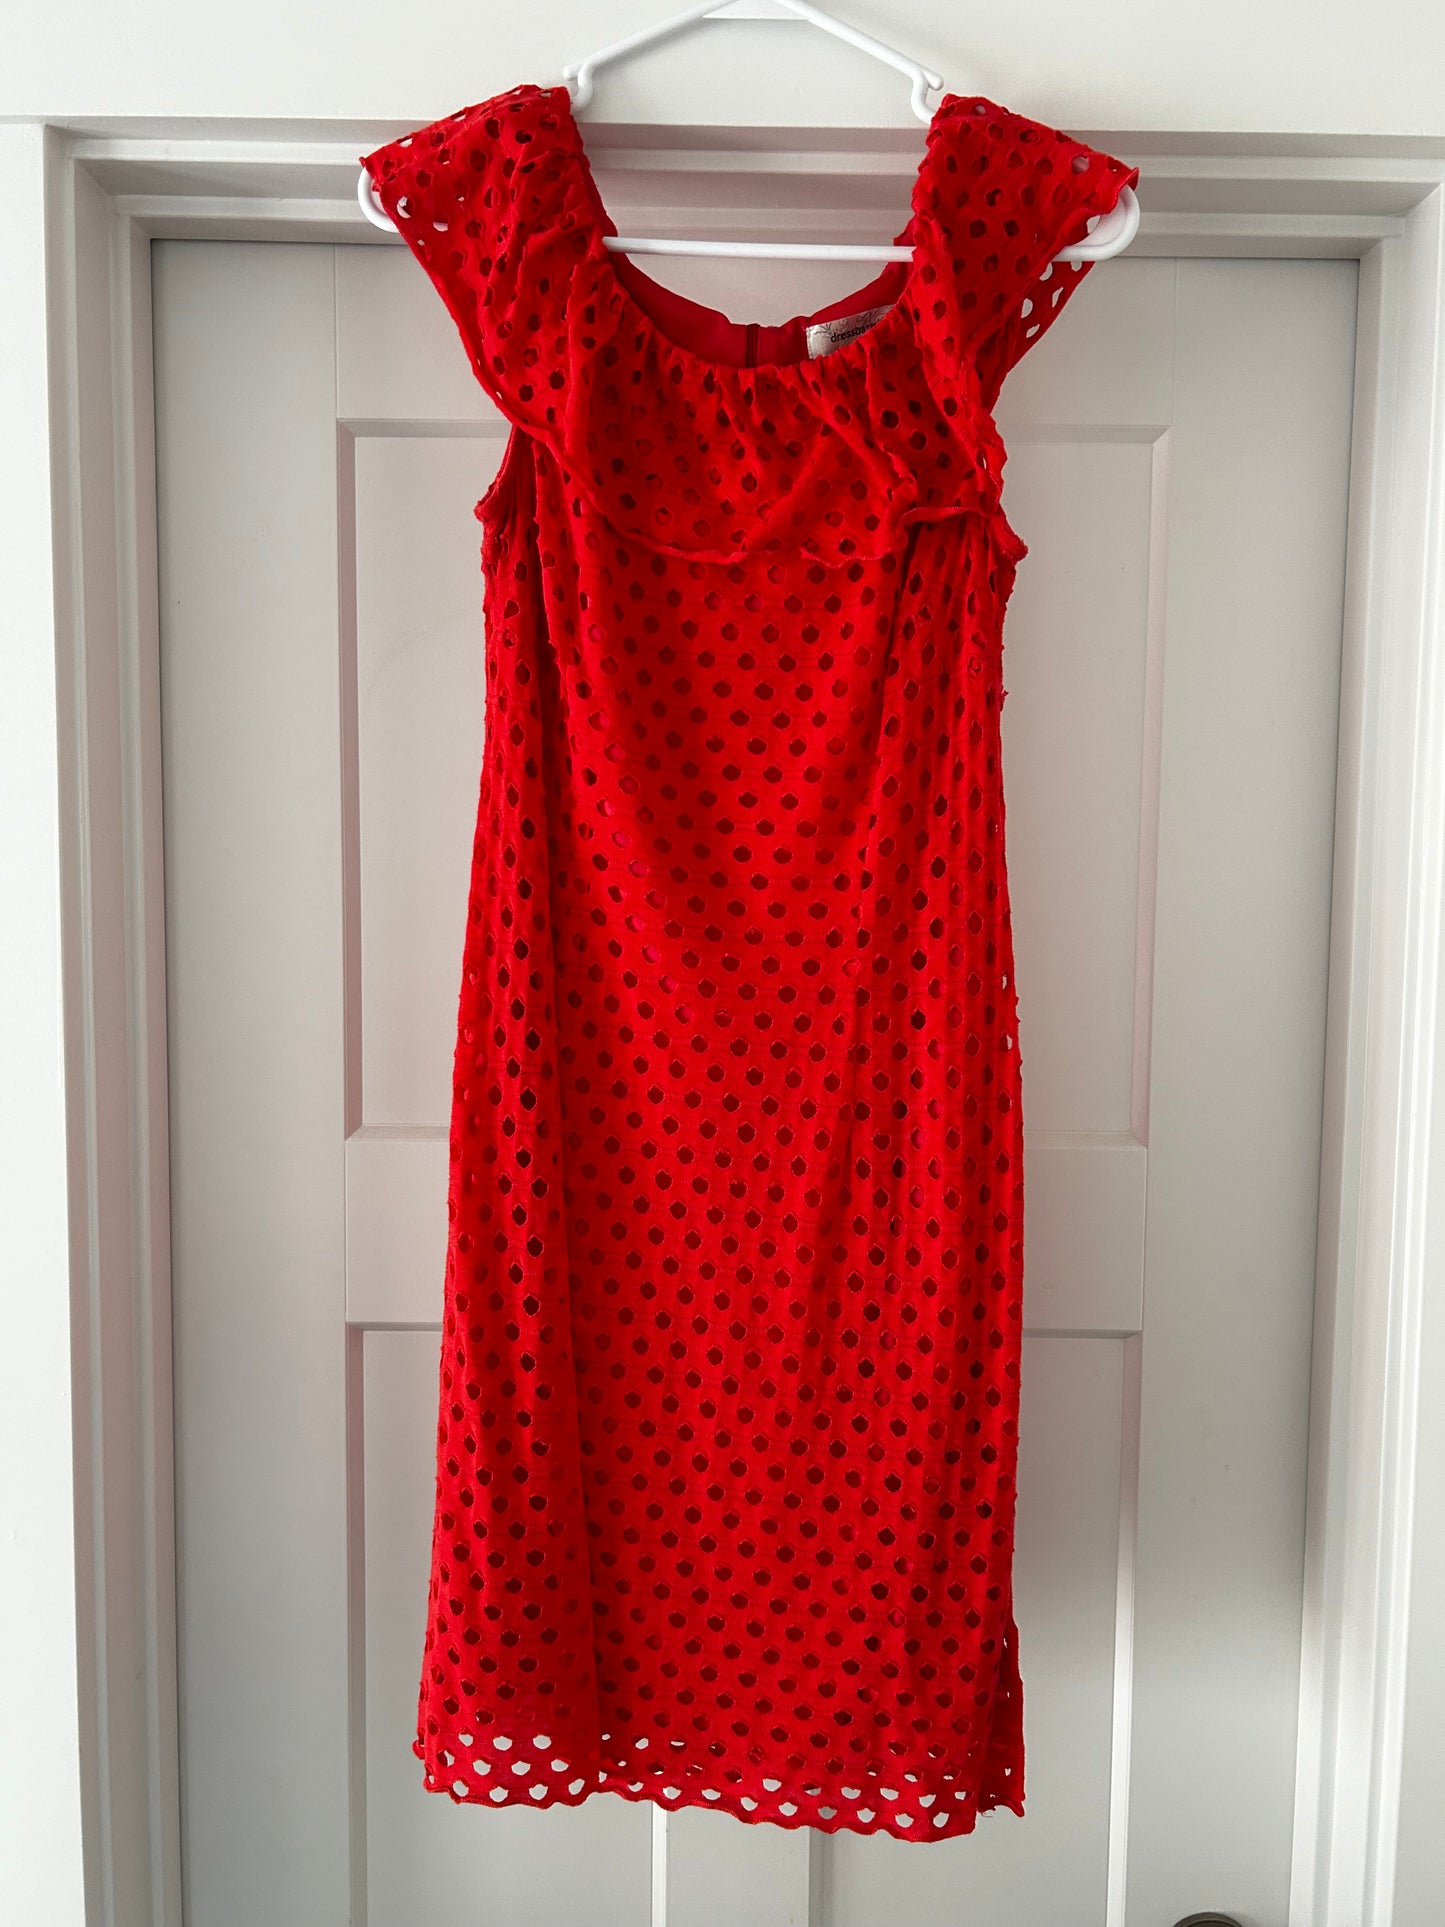 Size 6 Women's Coral Lace Dressbarn Dress